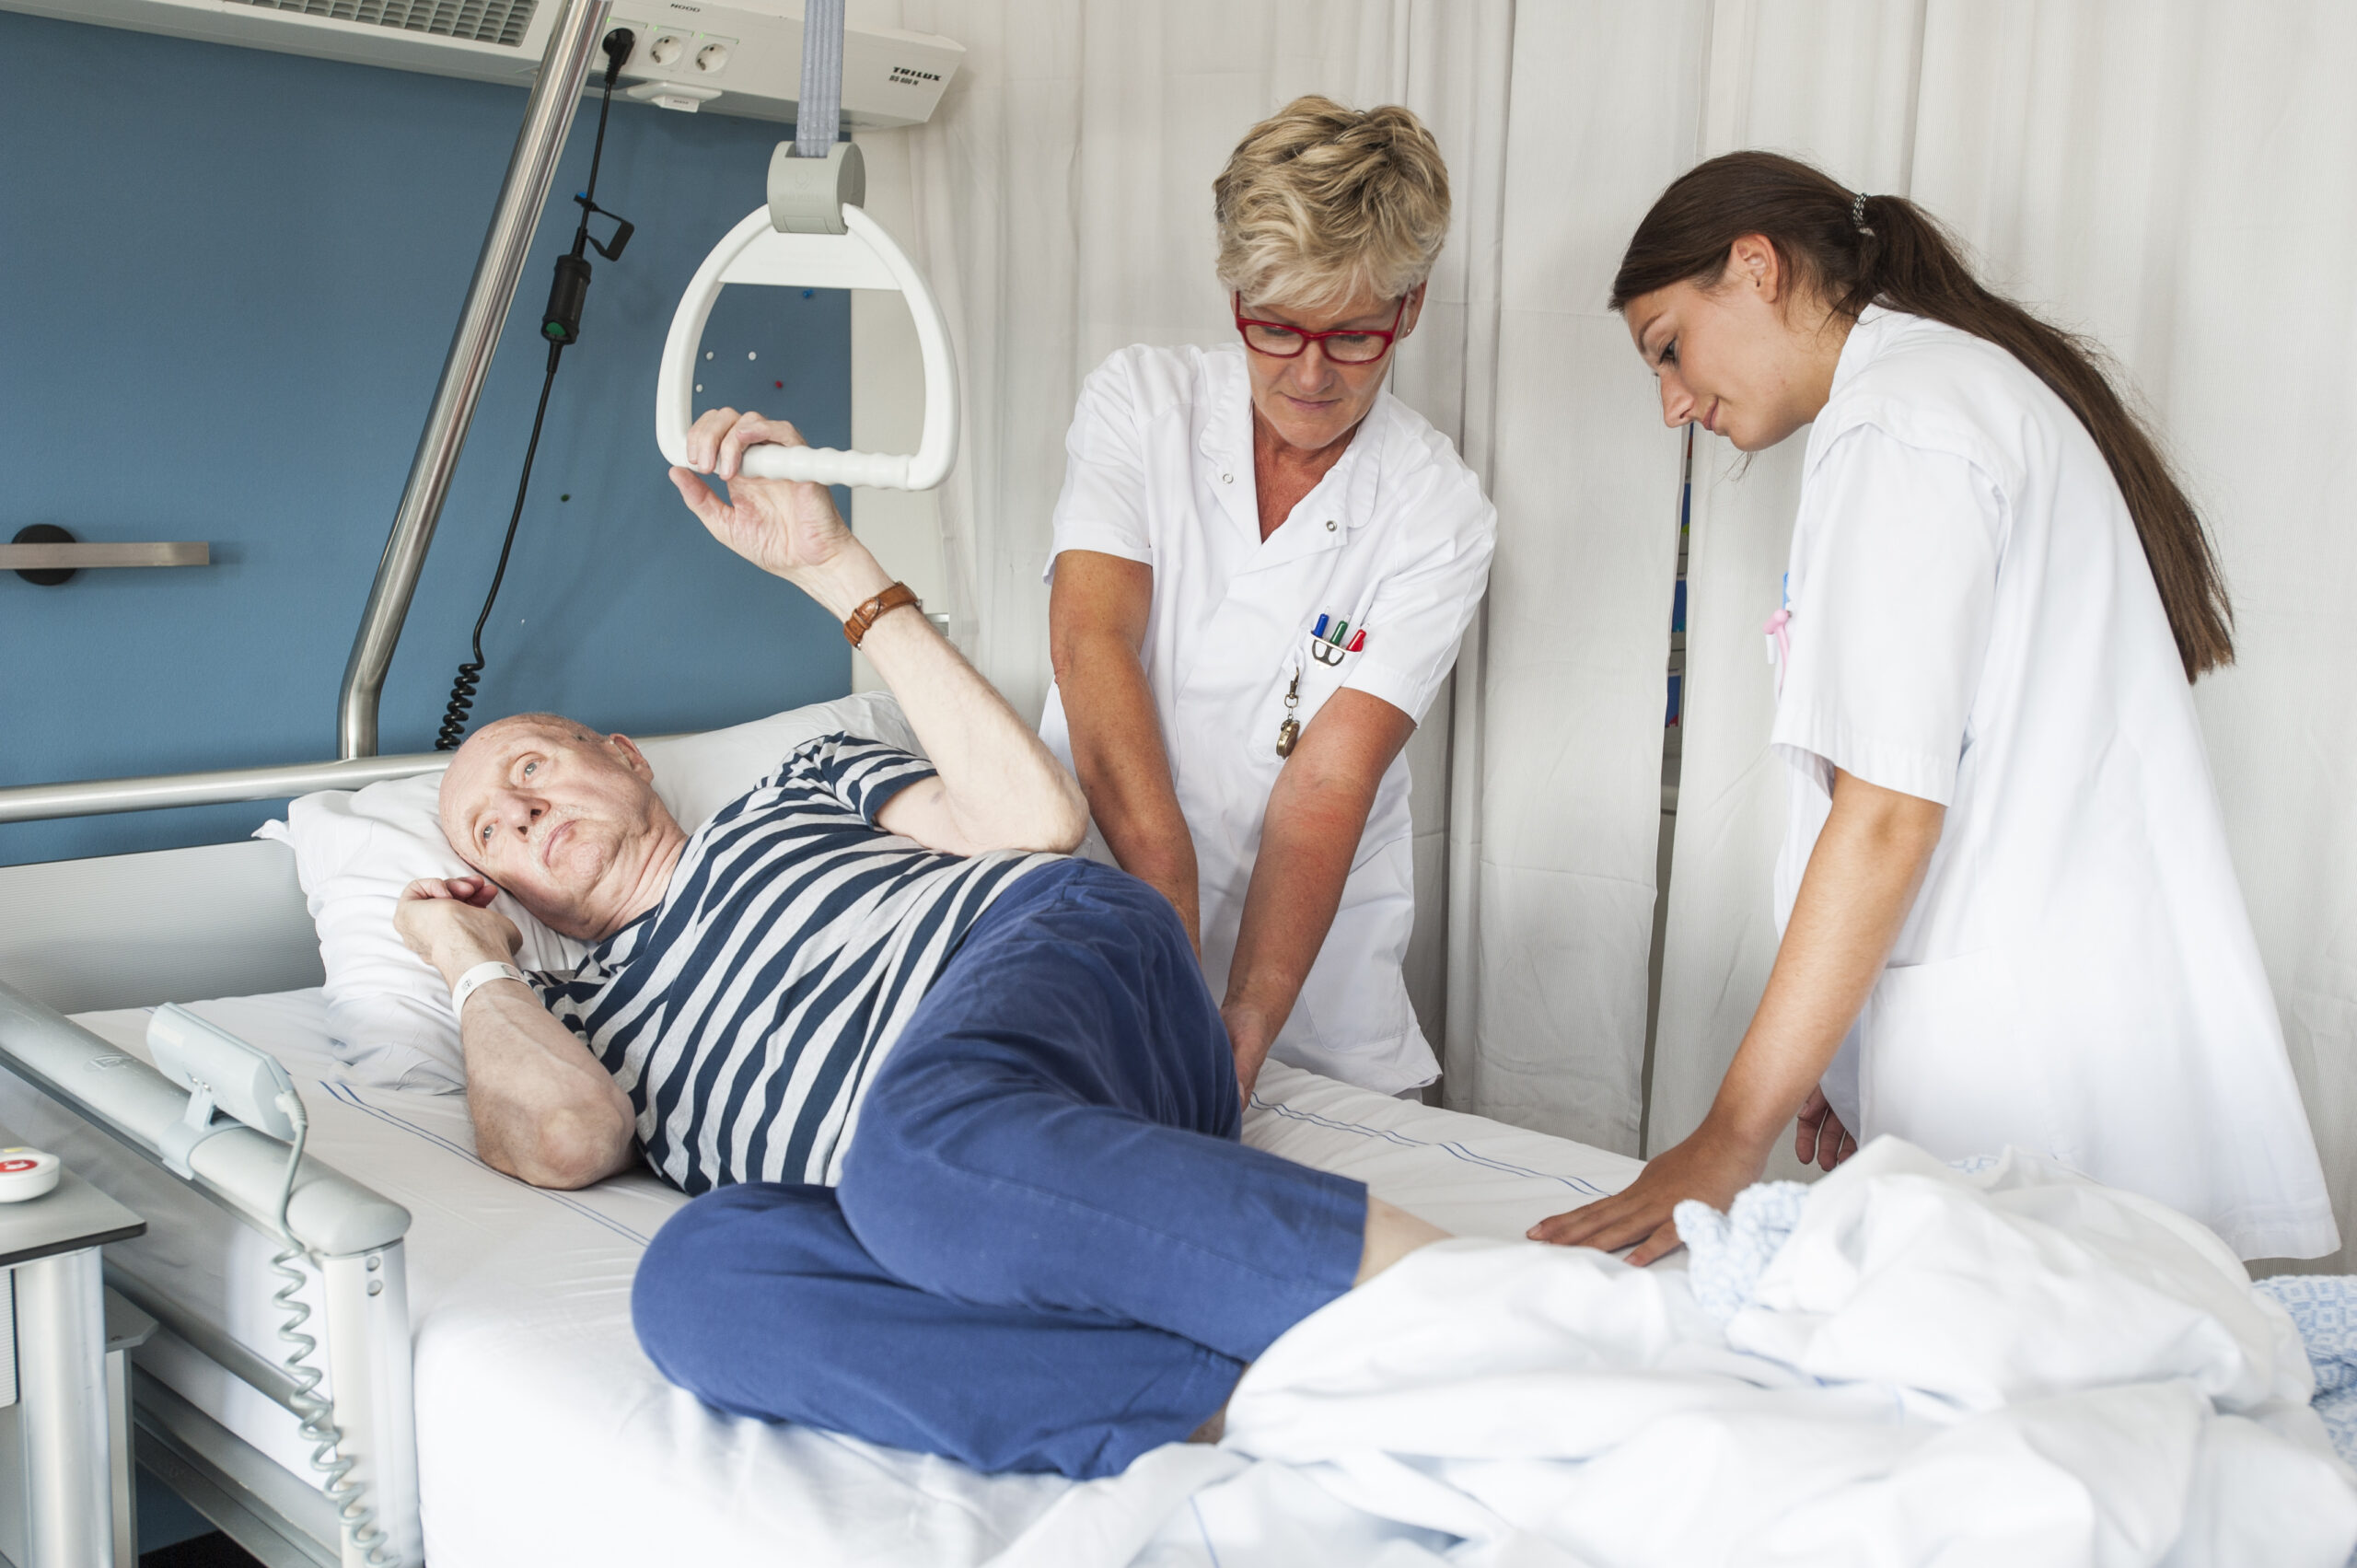 twee verpleegkundigen inspecteren de stuit van patiënt in ziekenhuisbed op signalen van decubitus